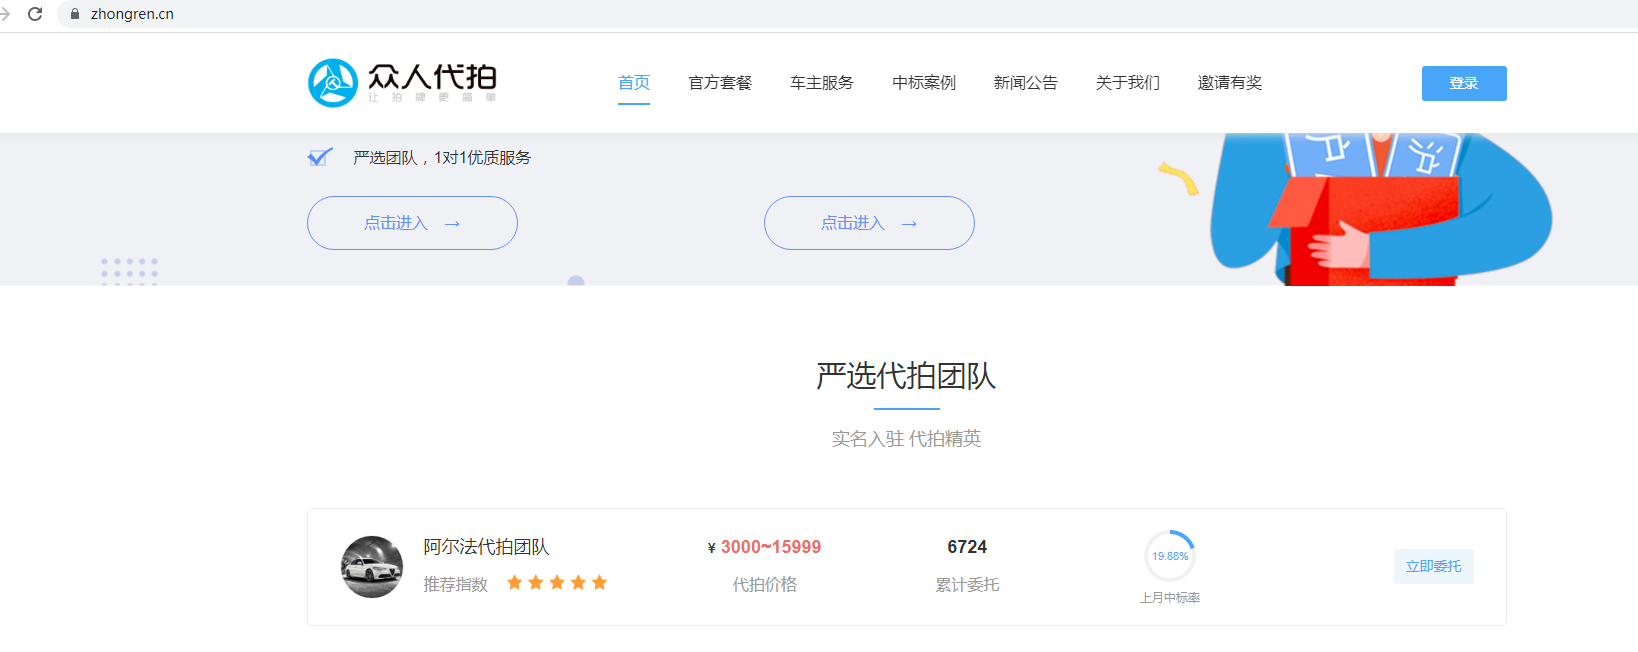 “众人代拍”平台收购域名Zhongren.cn